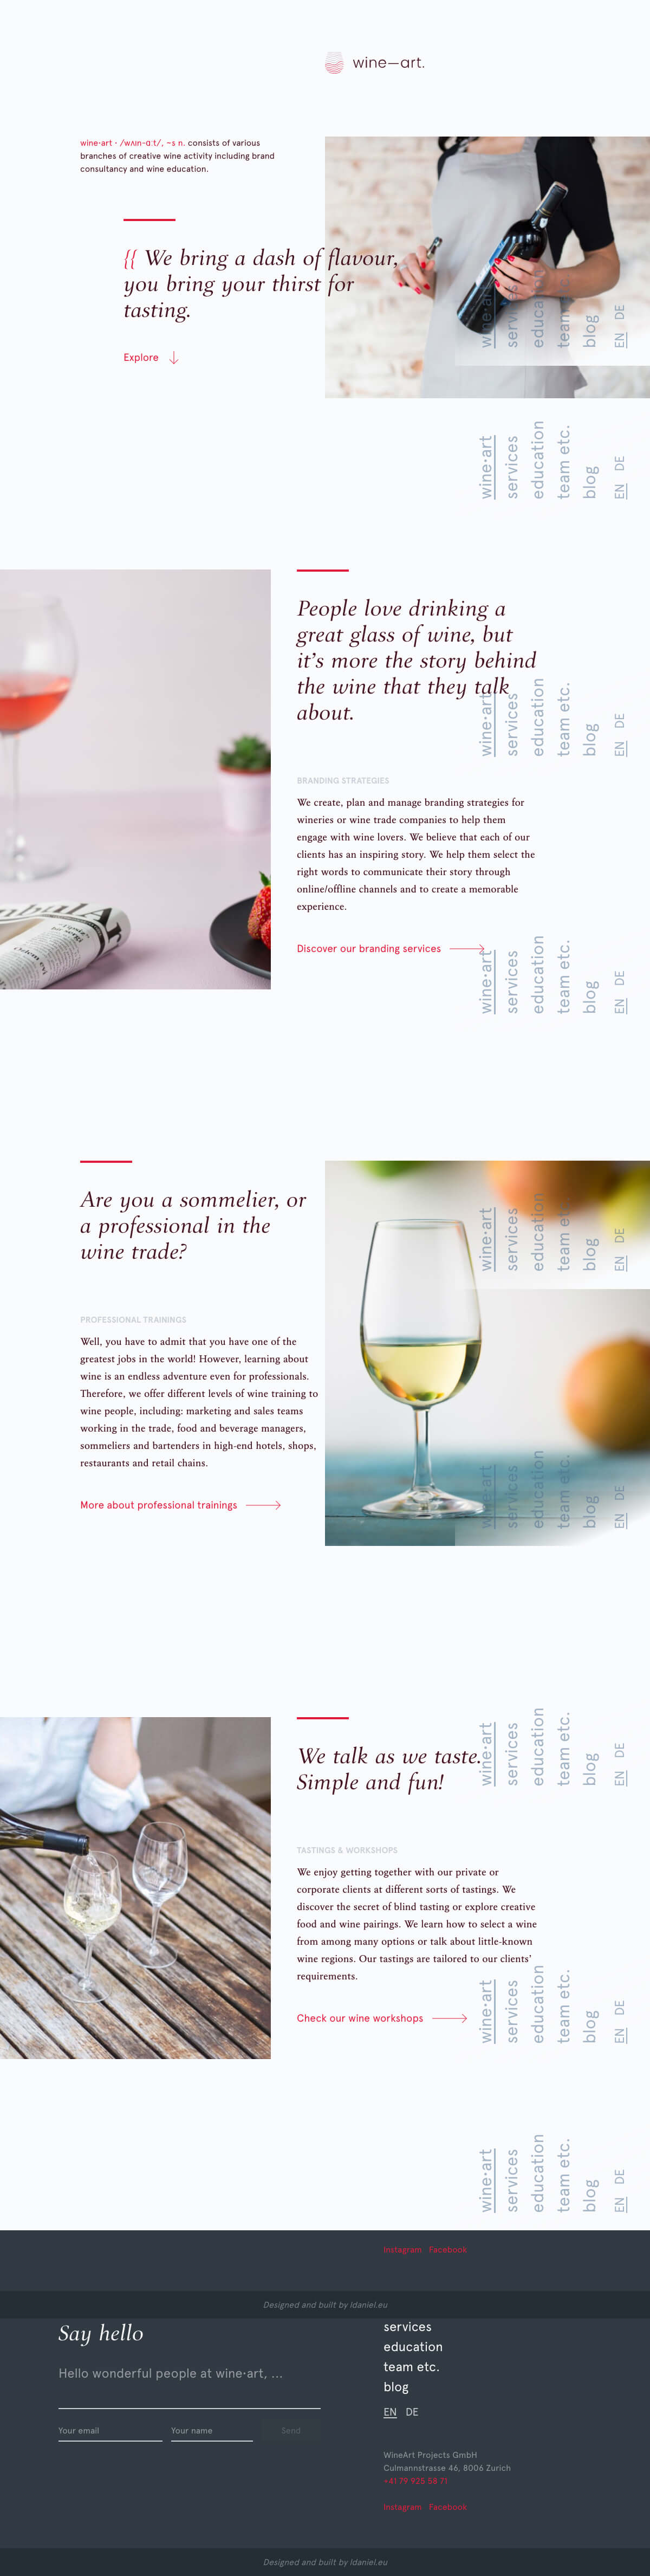 wine•art — Wine consultancy based in Zurich